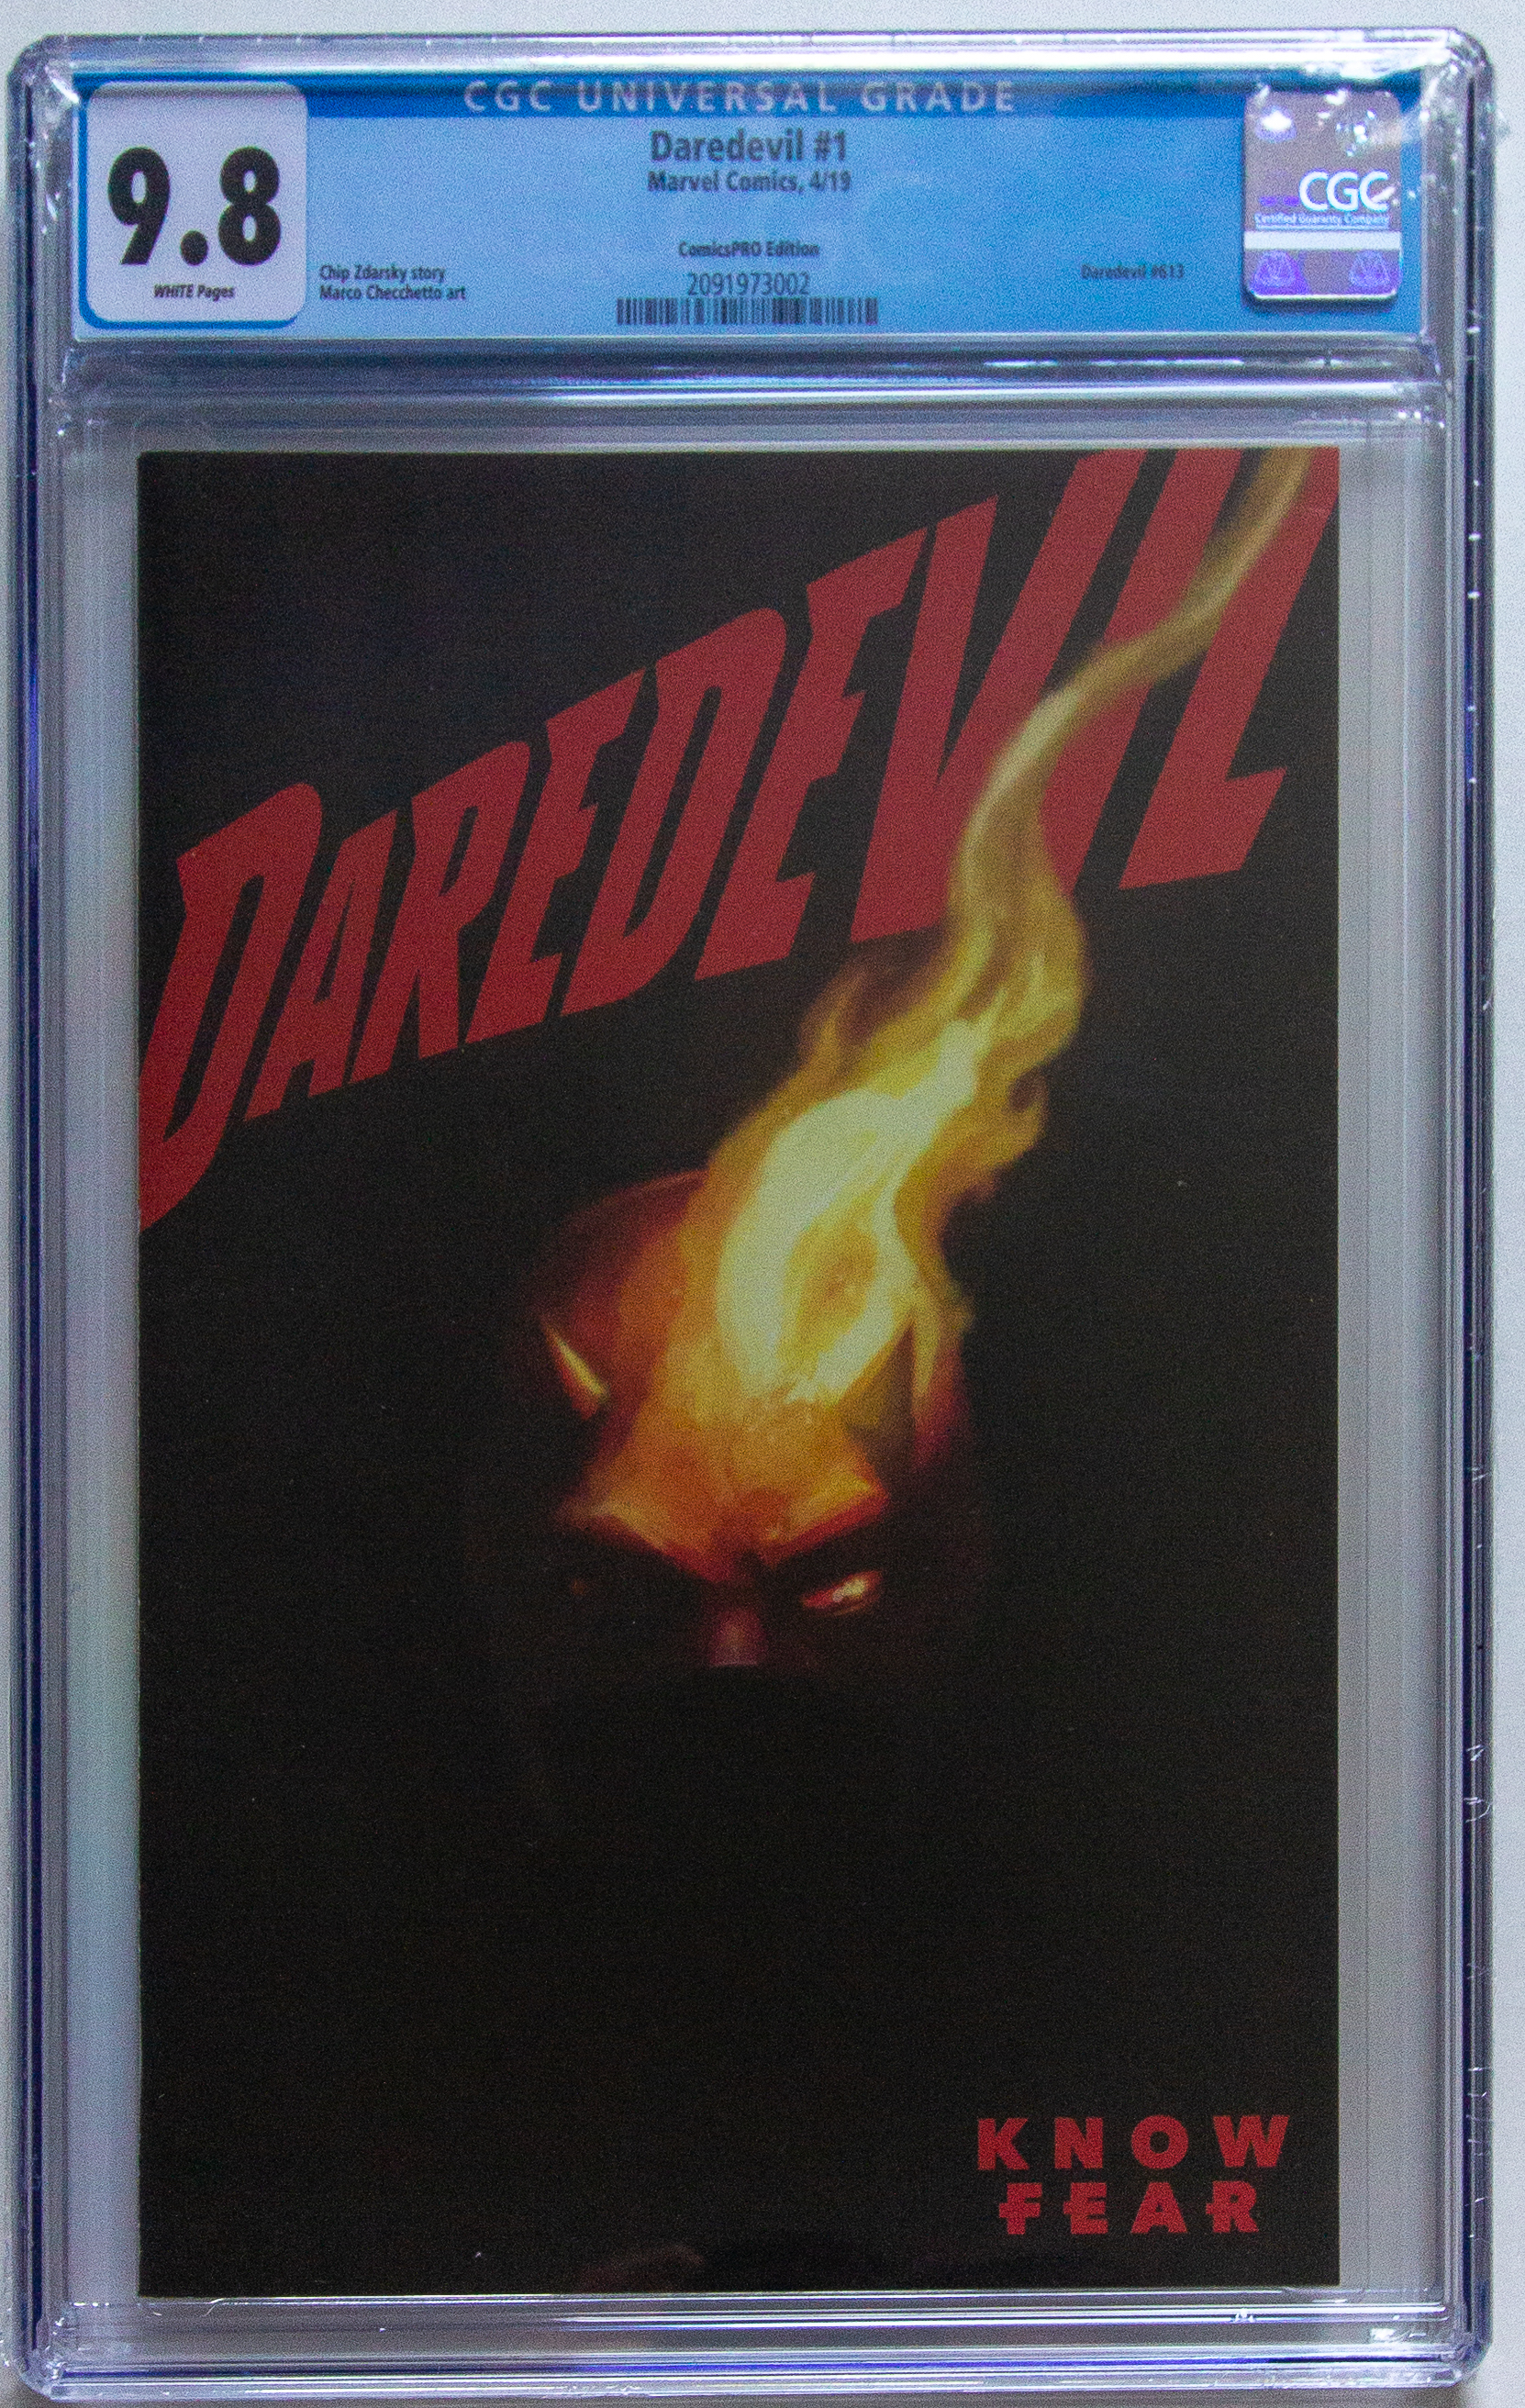 Daredevil #1 Comicspro Variant CGC 9.8